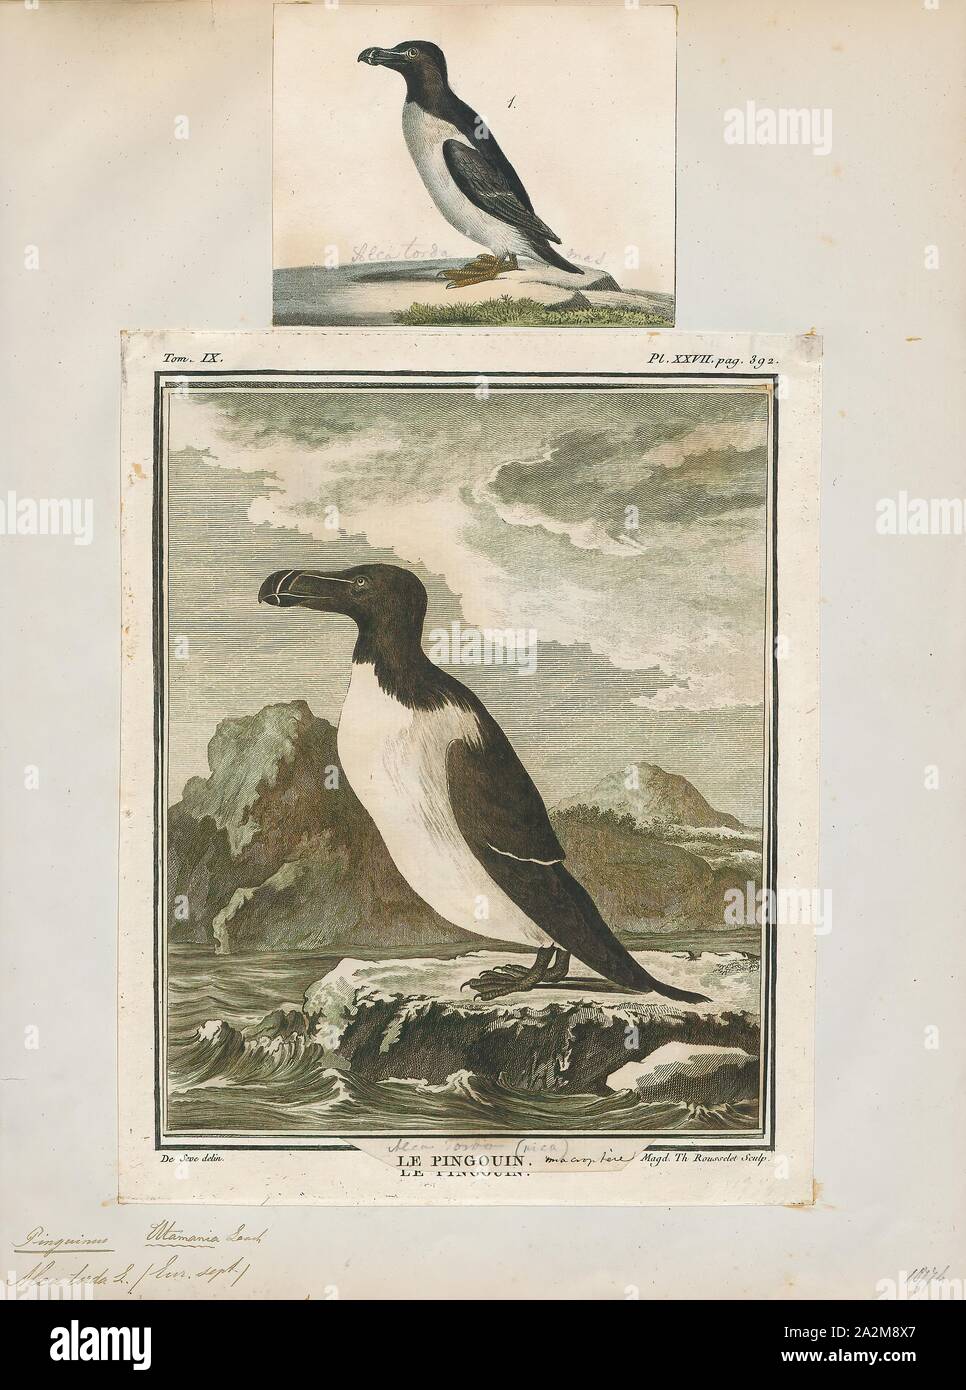 Chenalopex torda, Drucken, Riesenalk, der riesenalk (Pinguinus impennis) ist eine ausgestorbene Spezies von Flugunfähigen alcid, die in der Mitte des 19. Jahrhunderts ausgestorben. Es war das einzige moderne Arten in der Gattung Pinguinus. Es ist nicht eng mit dem Vögel jetzt bekannt als Pinguine, die entdeckt wurden später und so von den Seeleuten genannt, weil der physischen Ähnlichkeit zu den Riesenalk., 1700-1880 Stockfoto